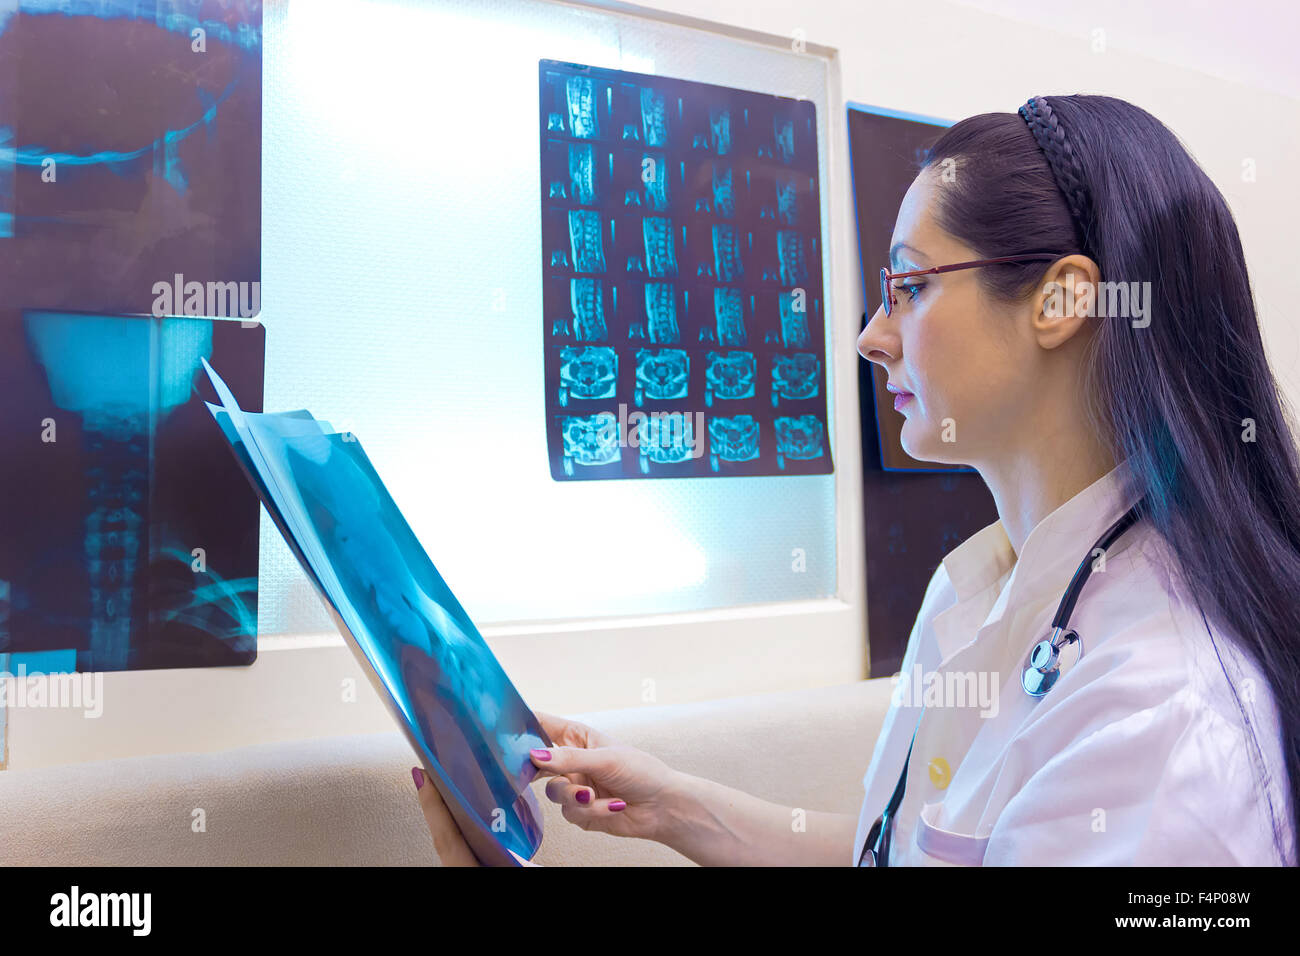 Un médecin examine les rayons X. Banque D'Images